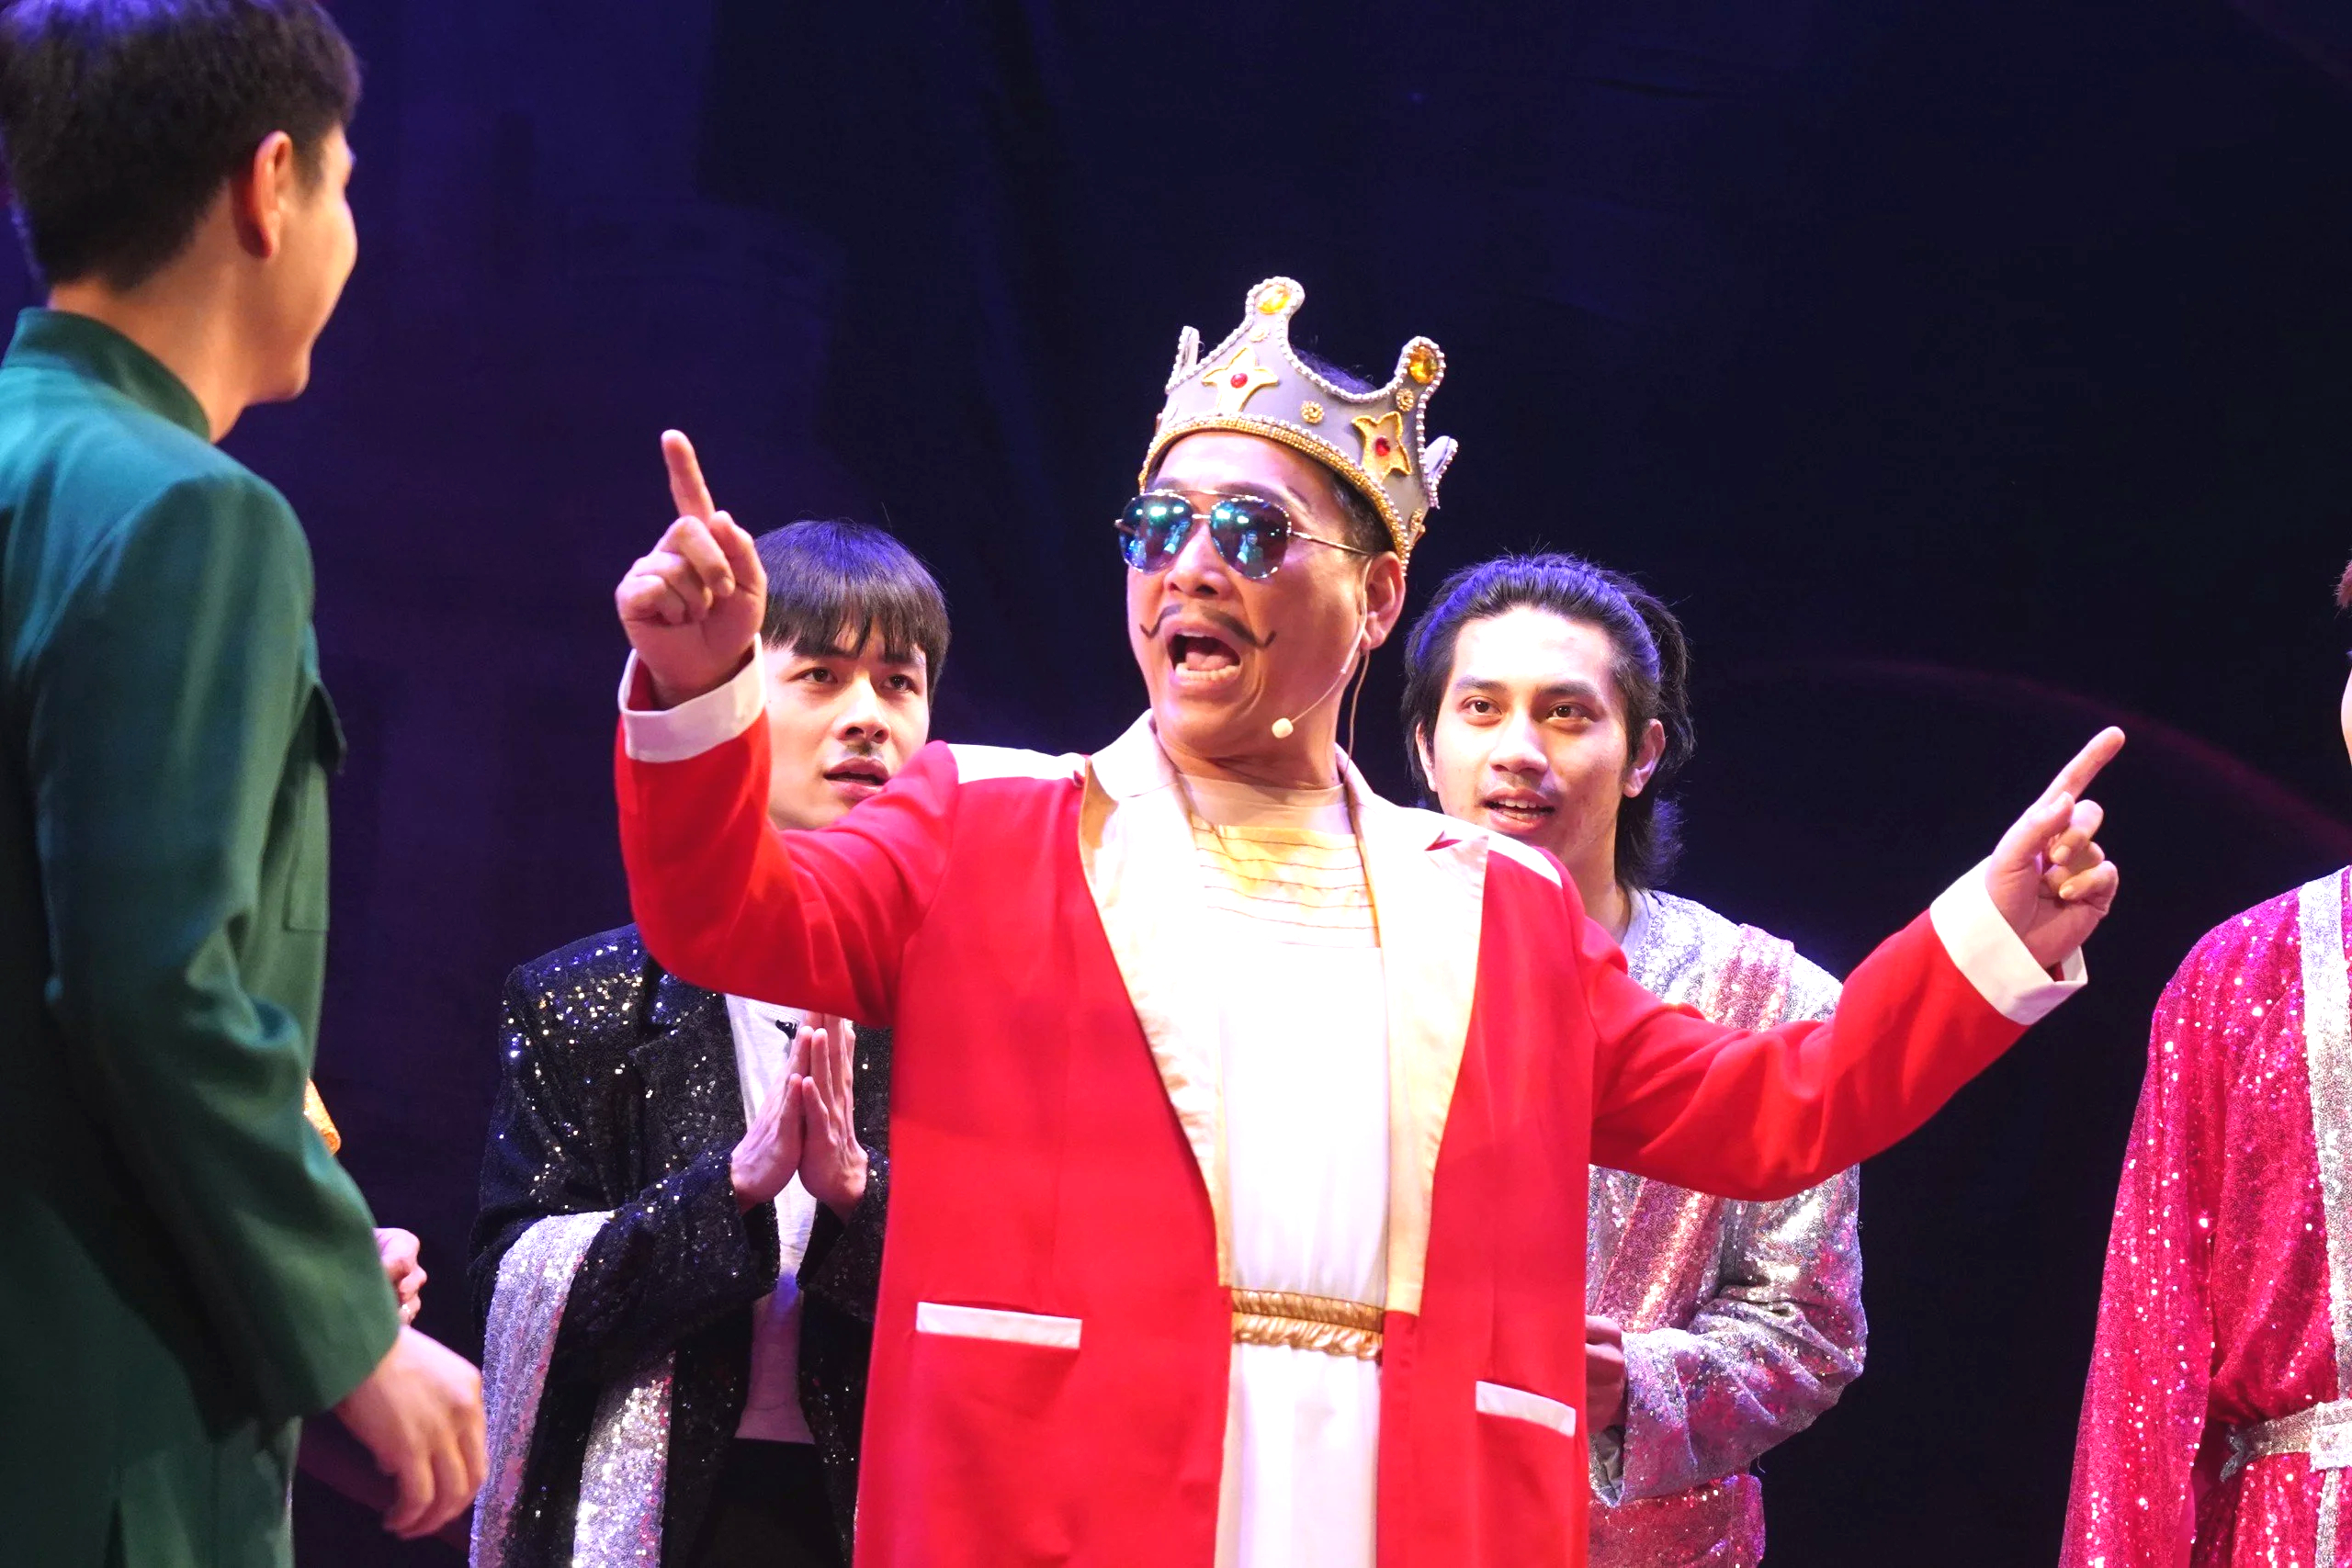 “Hoàng đế” Kiều Minh Hiếu nude trên sân khấu khiến khán giả nhí cười nắc nẻ